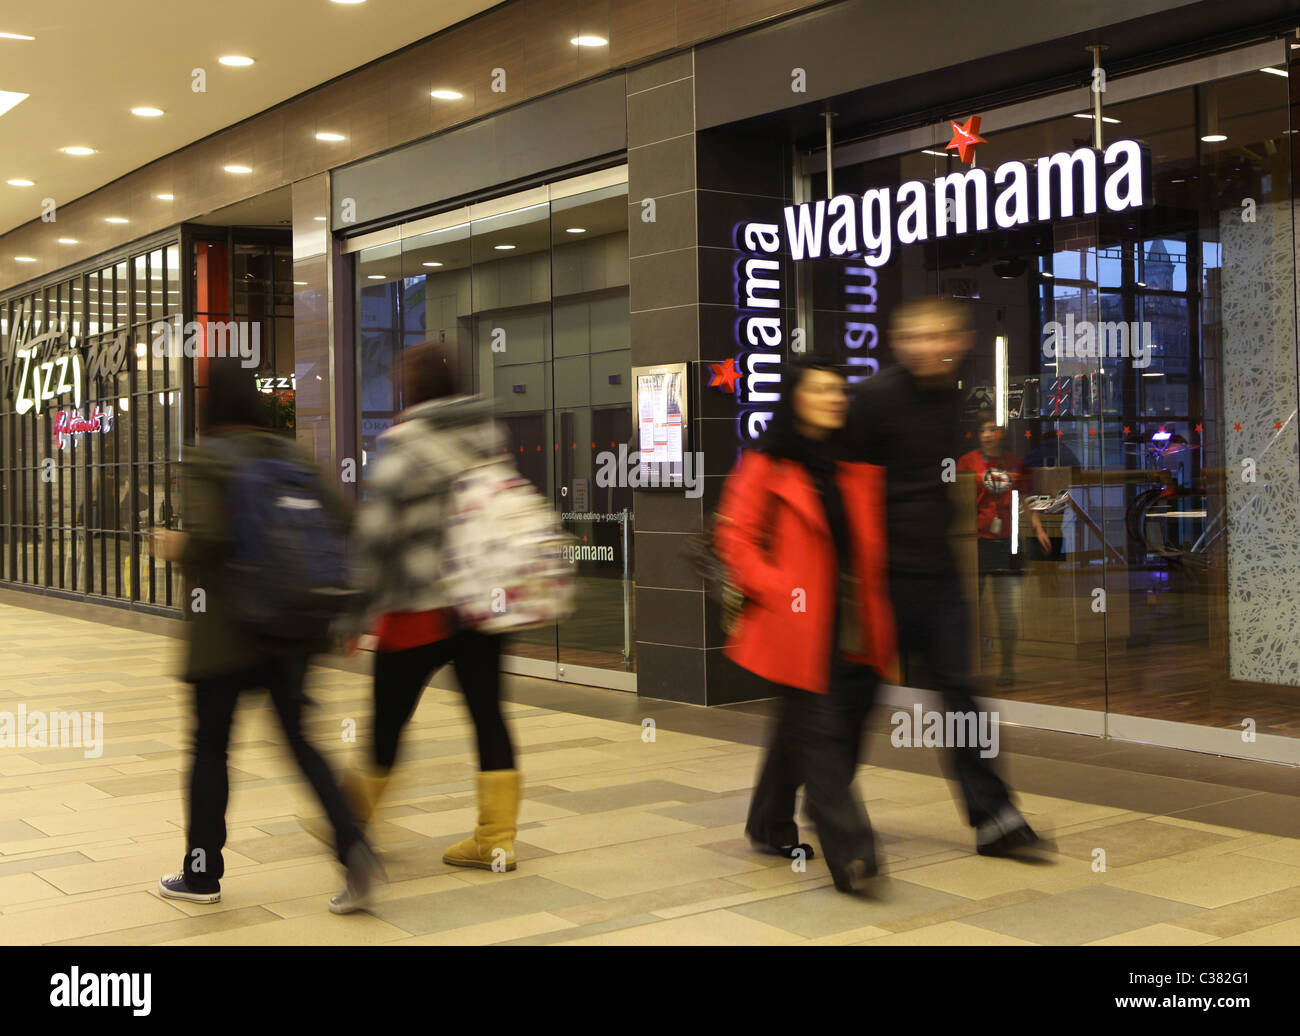 Une succursale de la chaîne alimentaire Wagamama dans un centre commercial au Royaume-Uni Banque D'Images